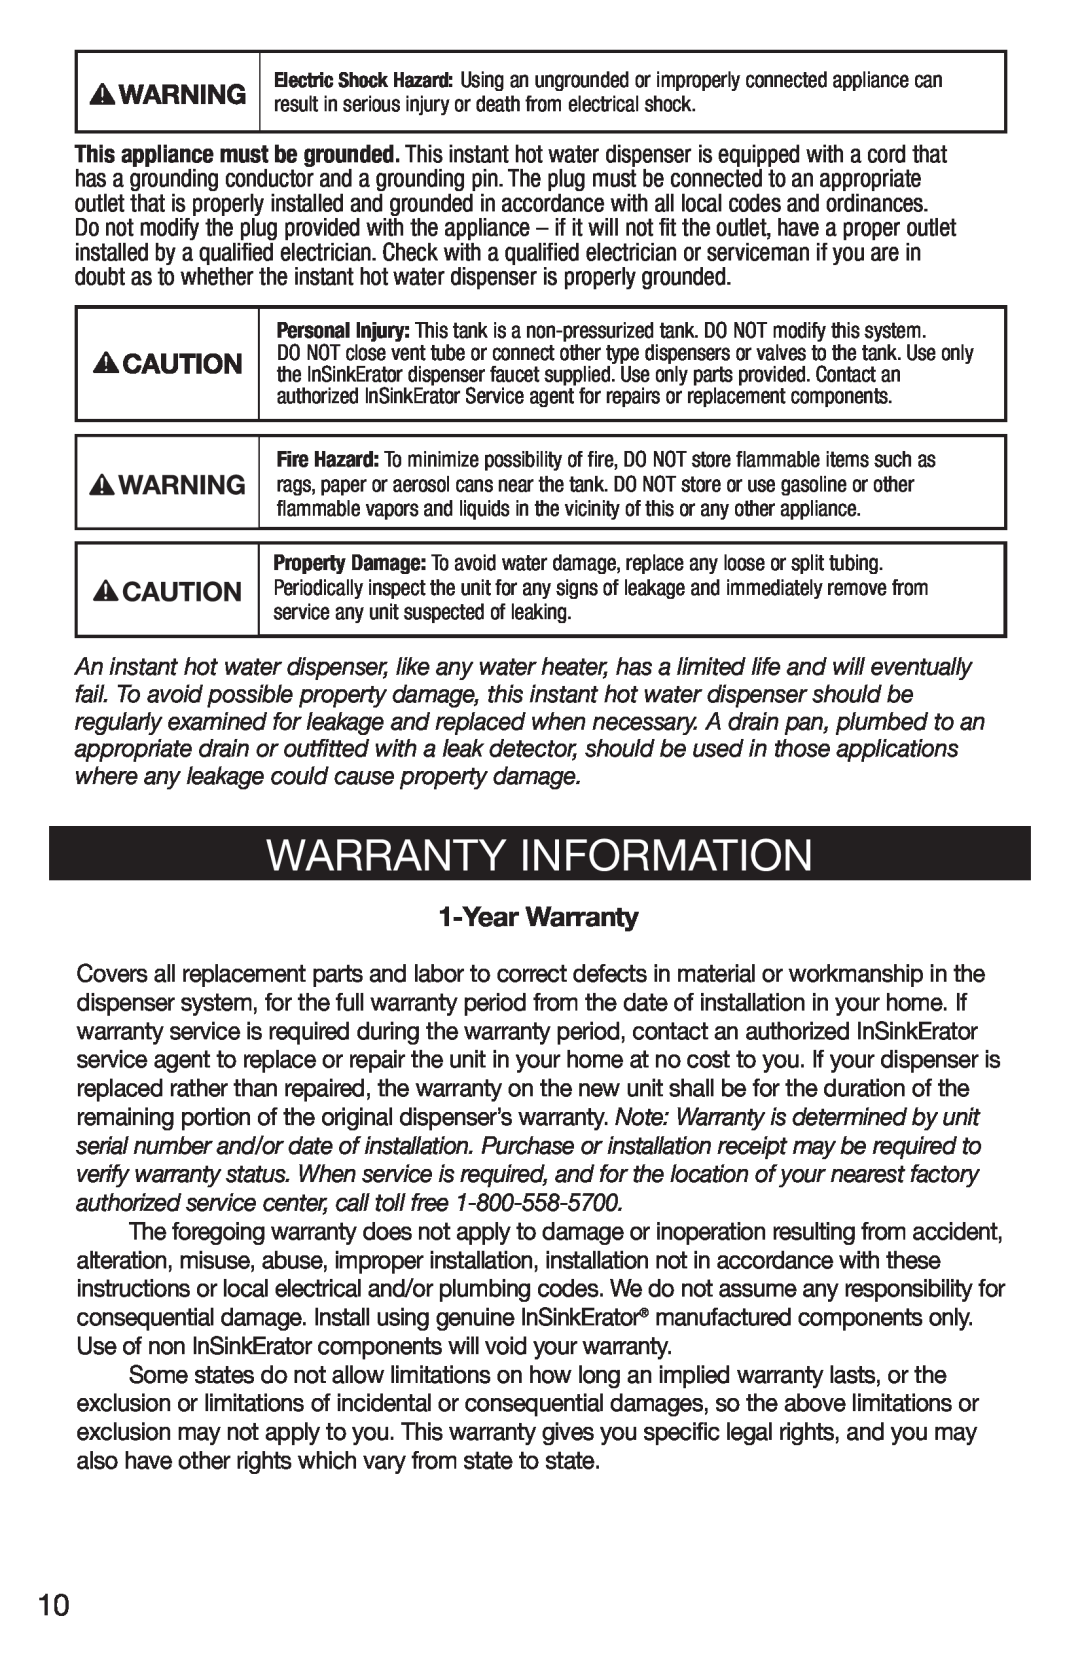 Emerson Hot1 manual Warranty Information, YearWarranty 